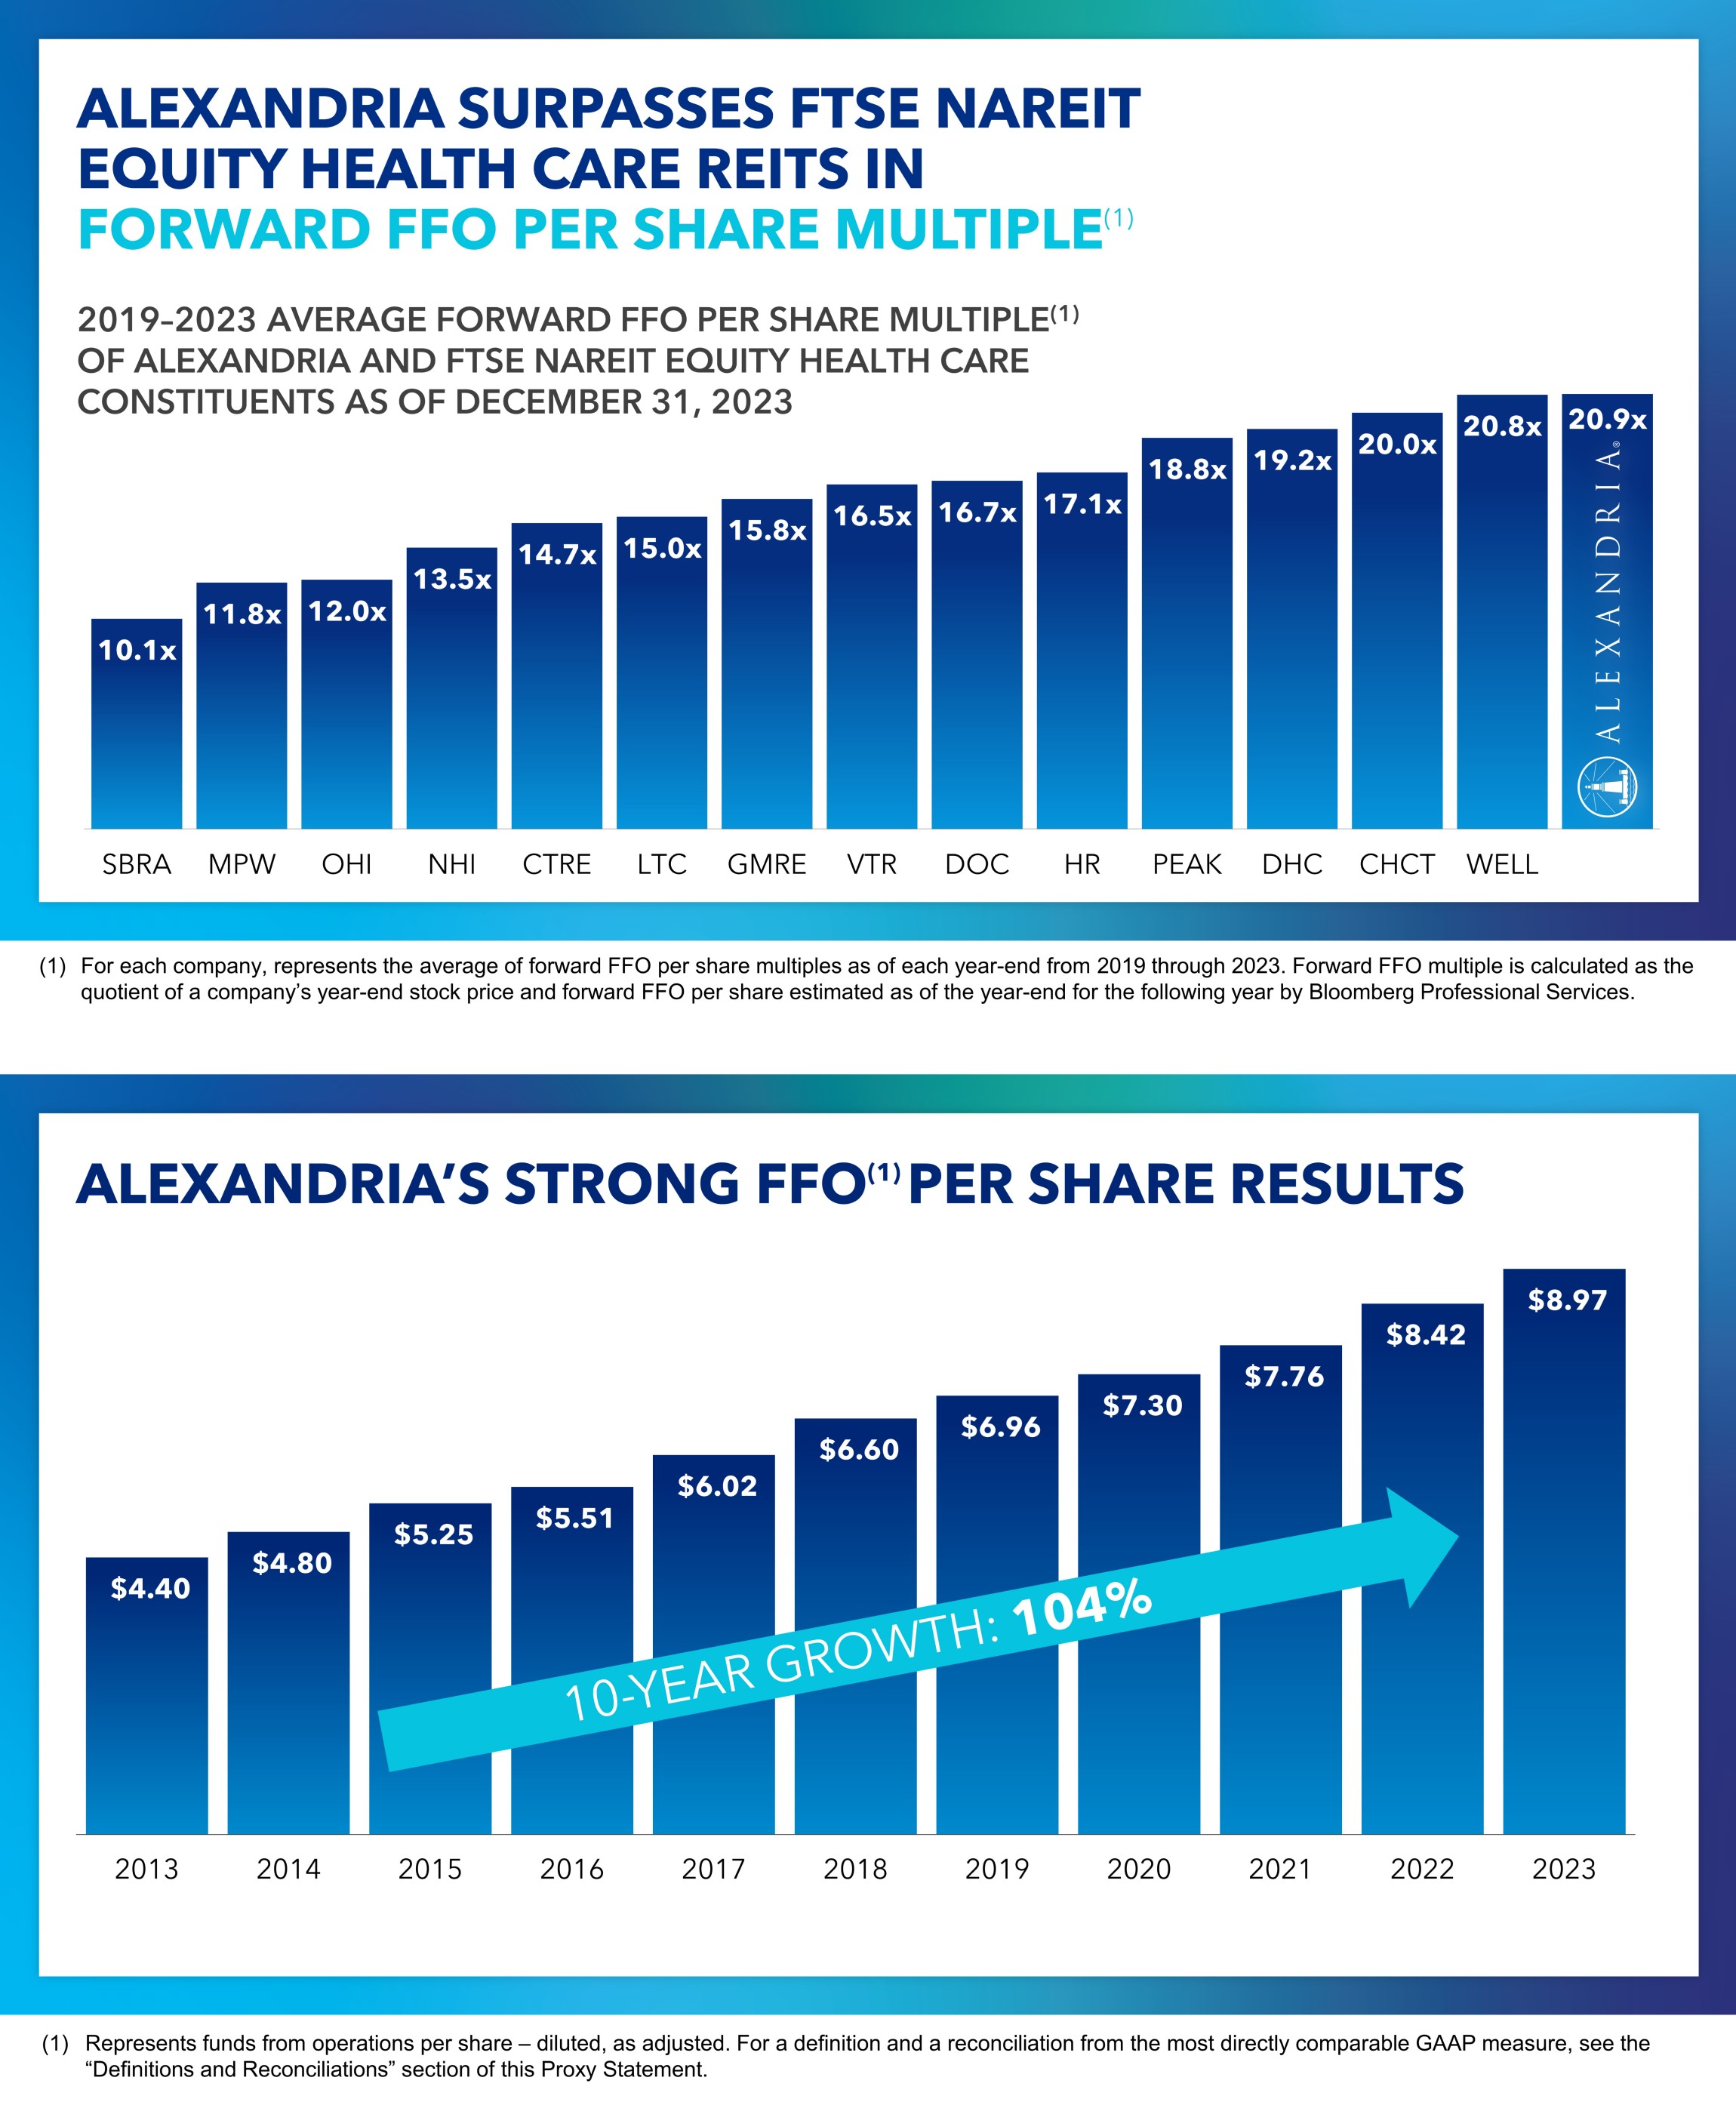 FFO mult vs per share v2.jpg